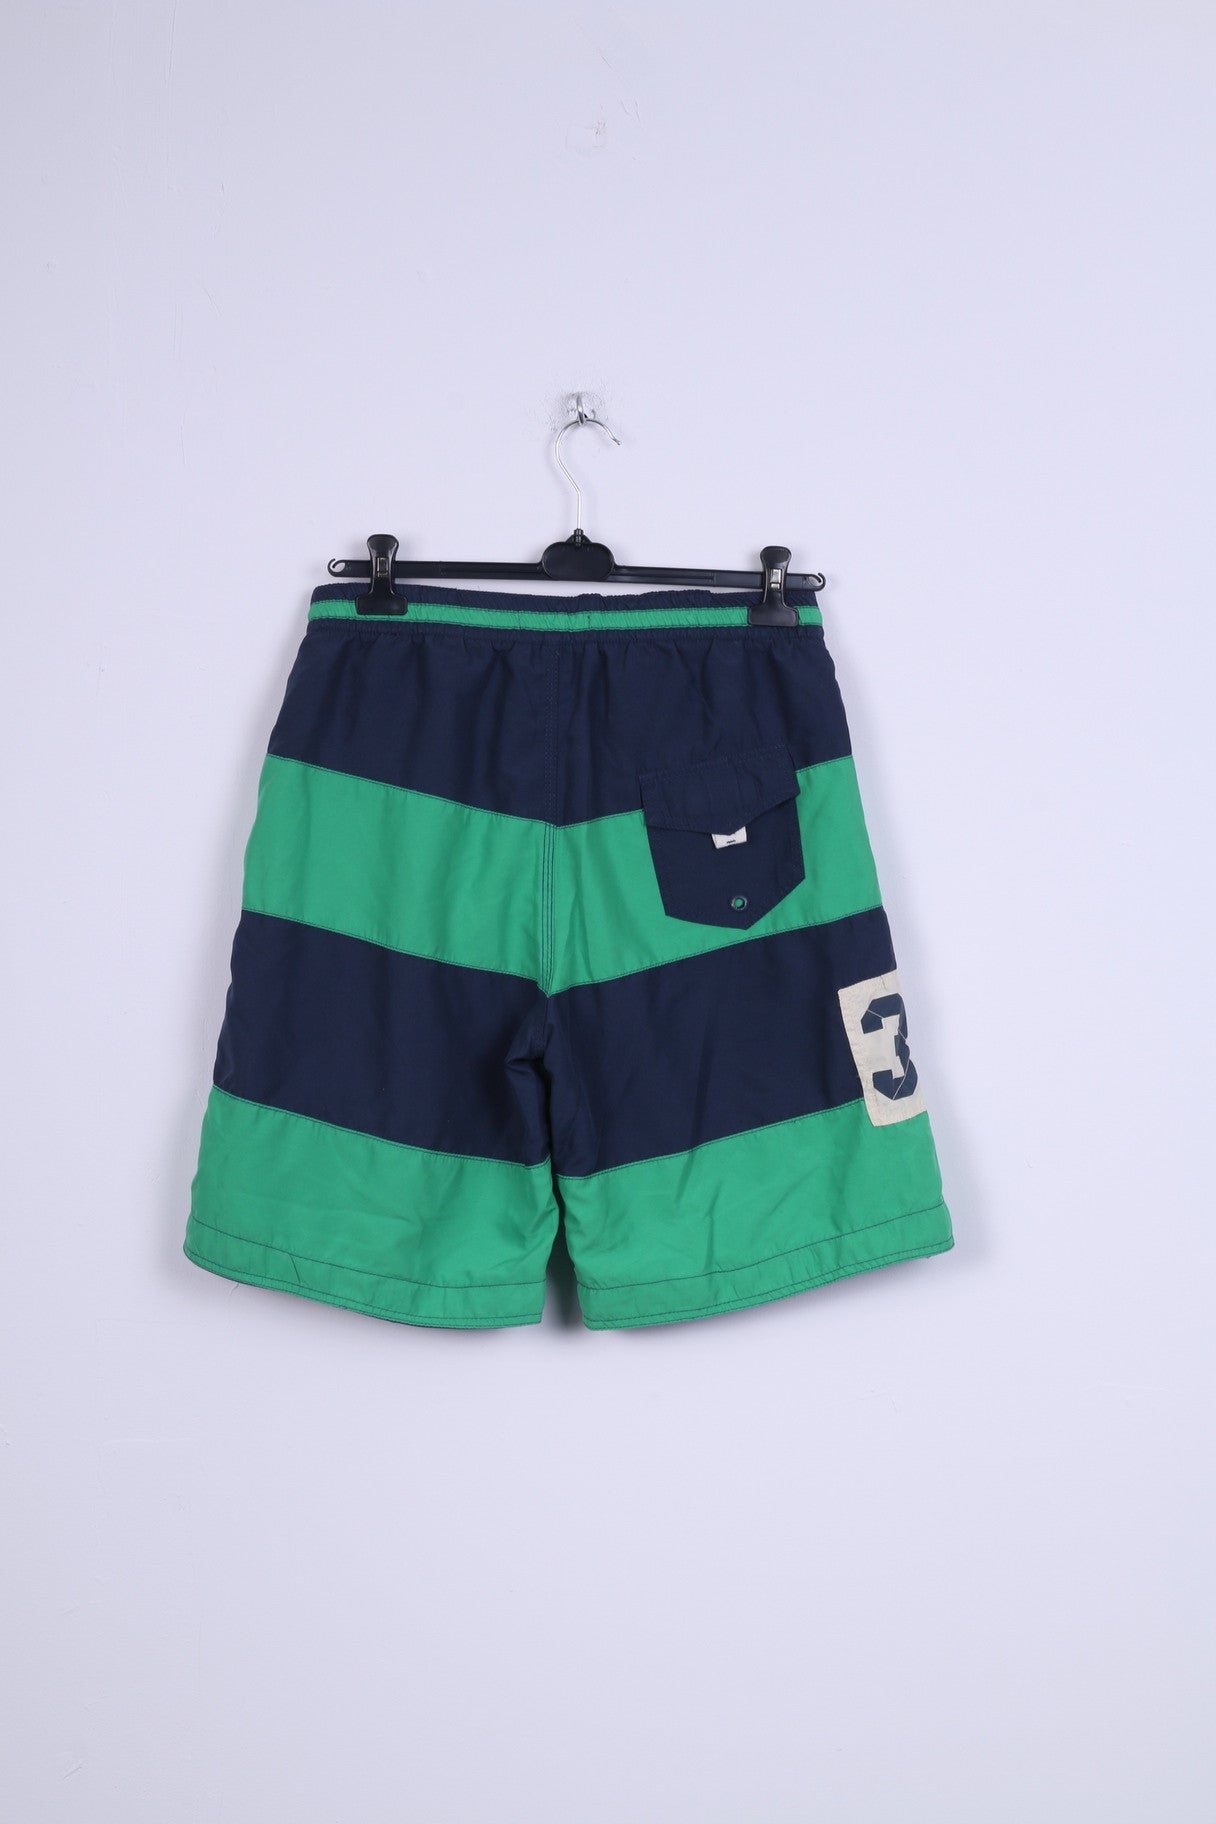 KANGOL Mens L Swimming  Shorts Sport Red Sport Green Striped Swimpants